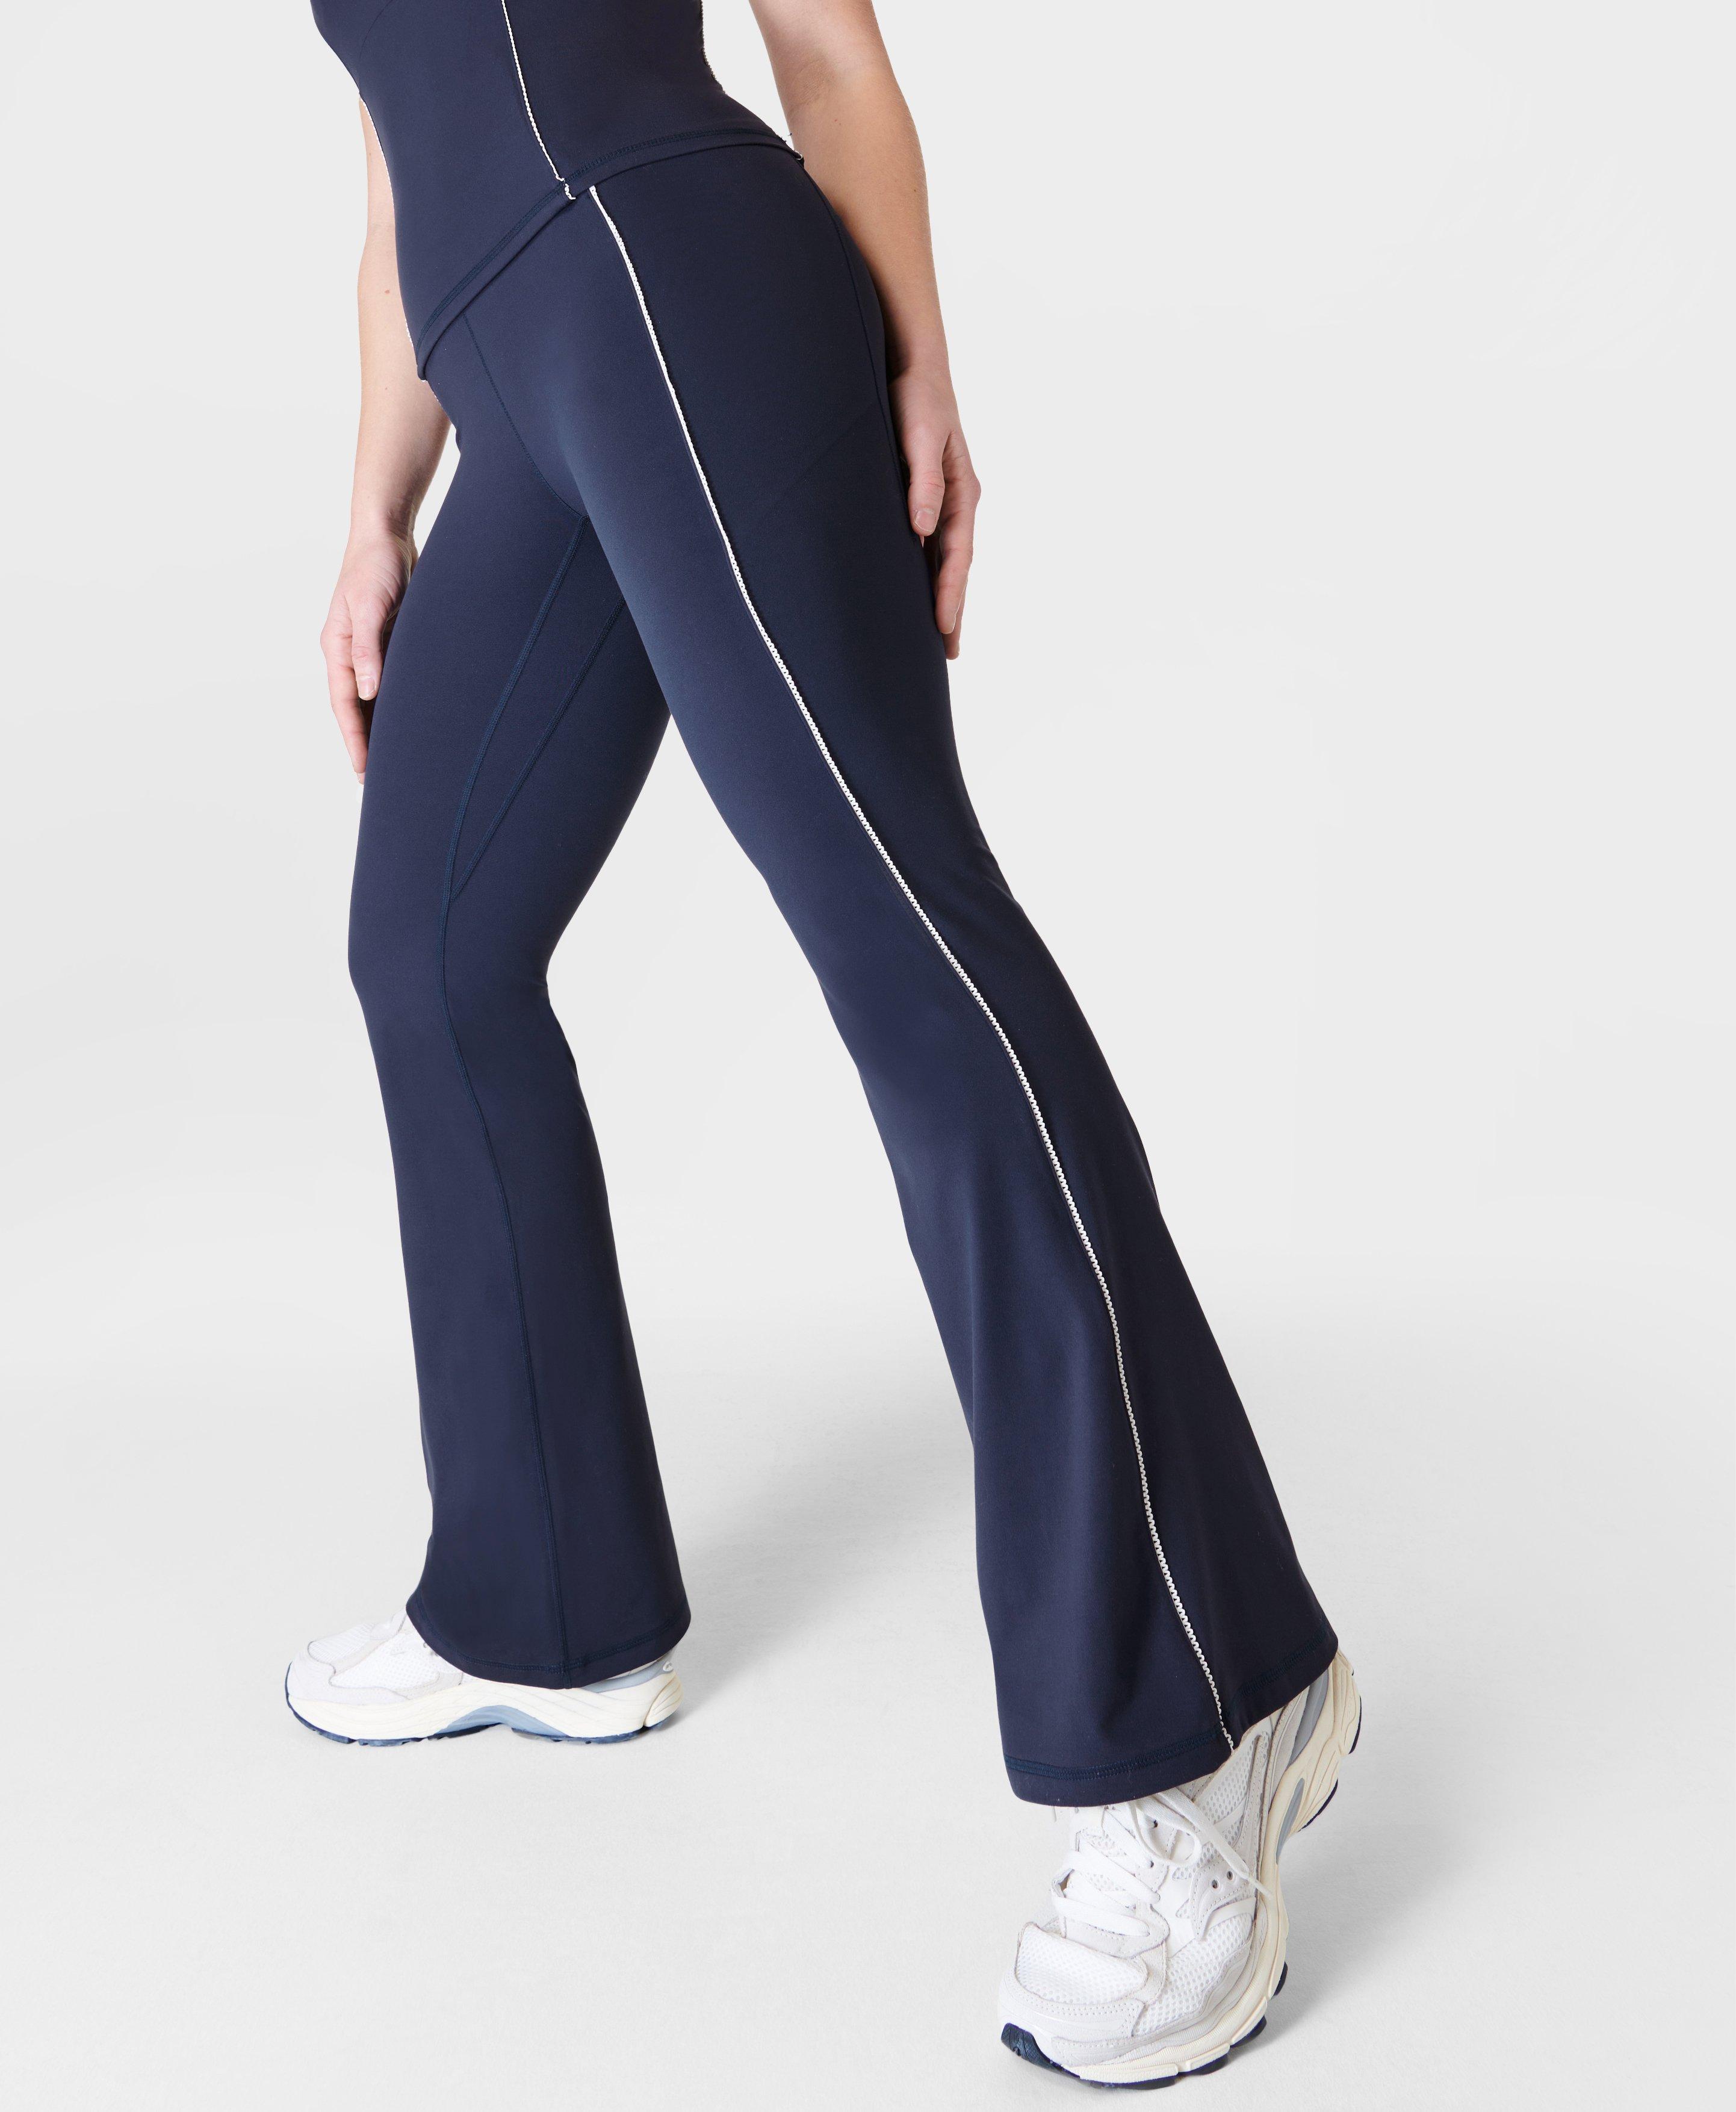 Super Soft Picot Lace Flare Pants - Navy Blue, Women's Pants